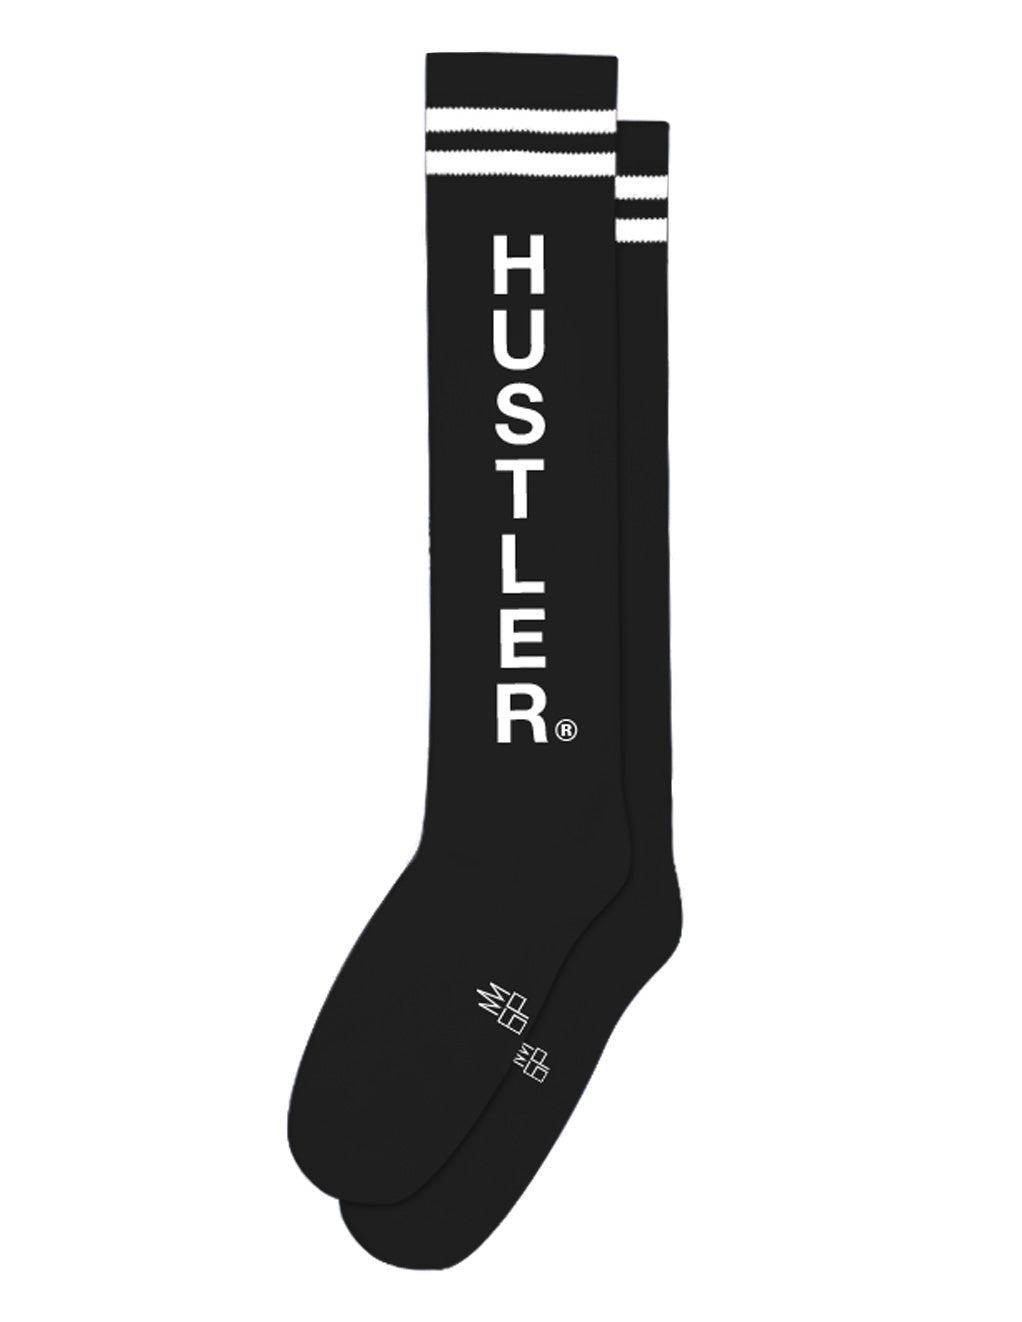 Hustler Knee Socks Black With White